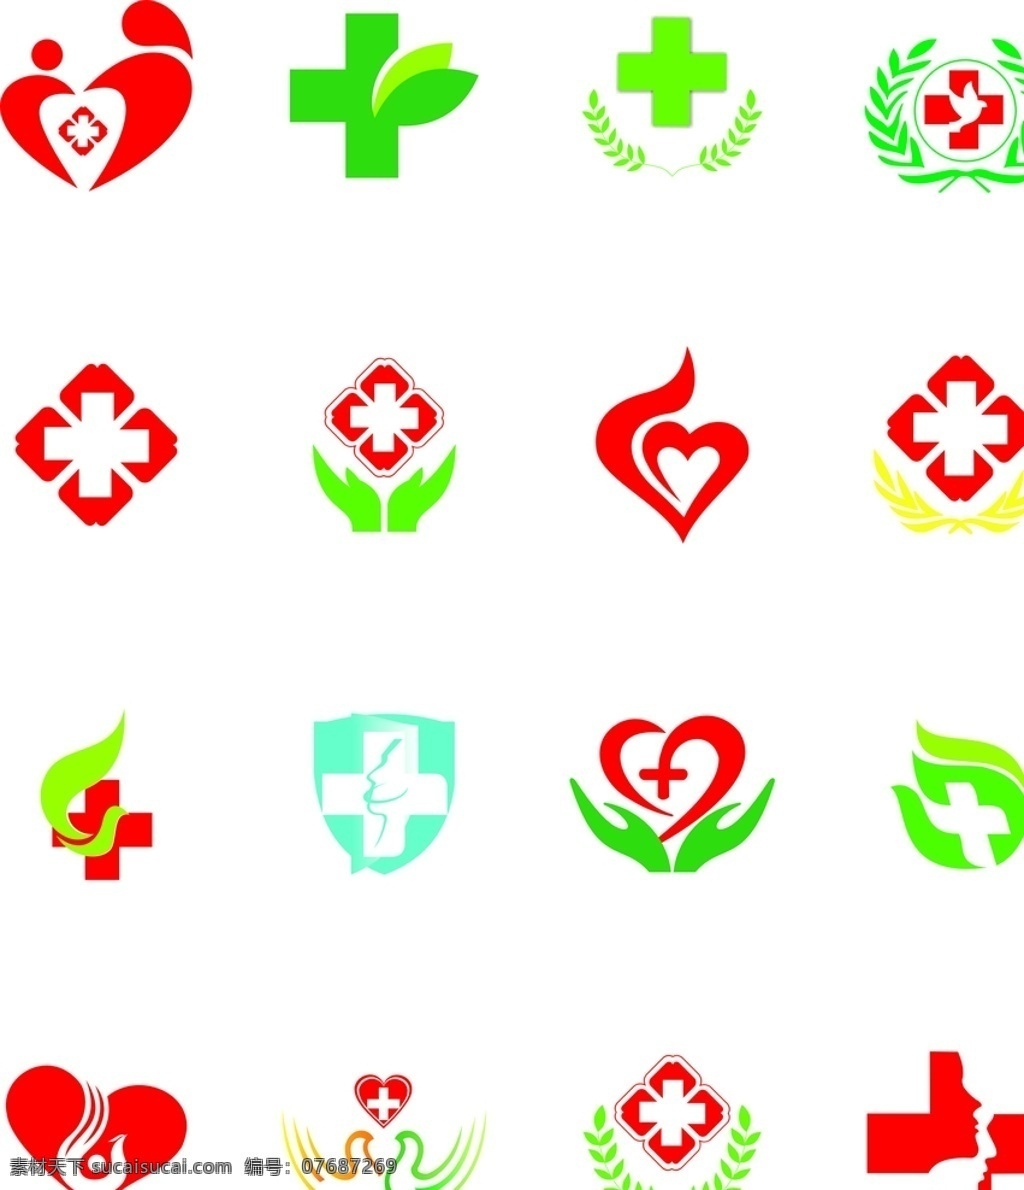 红十字标志 医院标 医院标志 红十字 logo 医院logo 门诊 红十字标牌 医院标牌 标识标志图标 矢量图